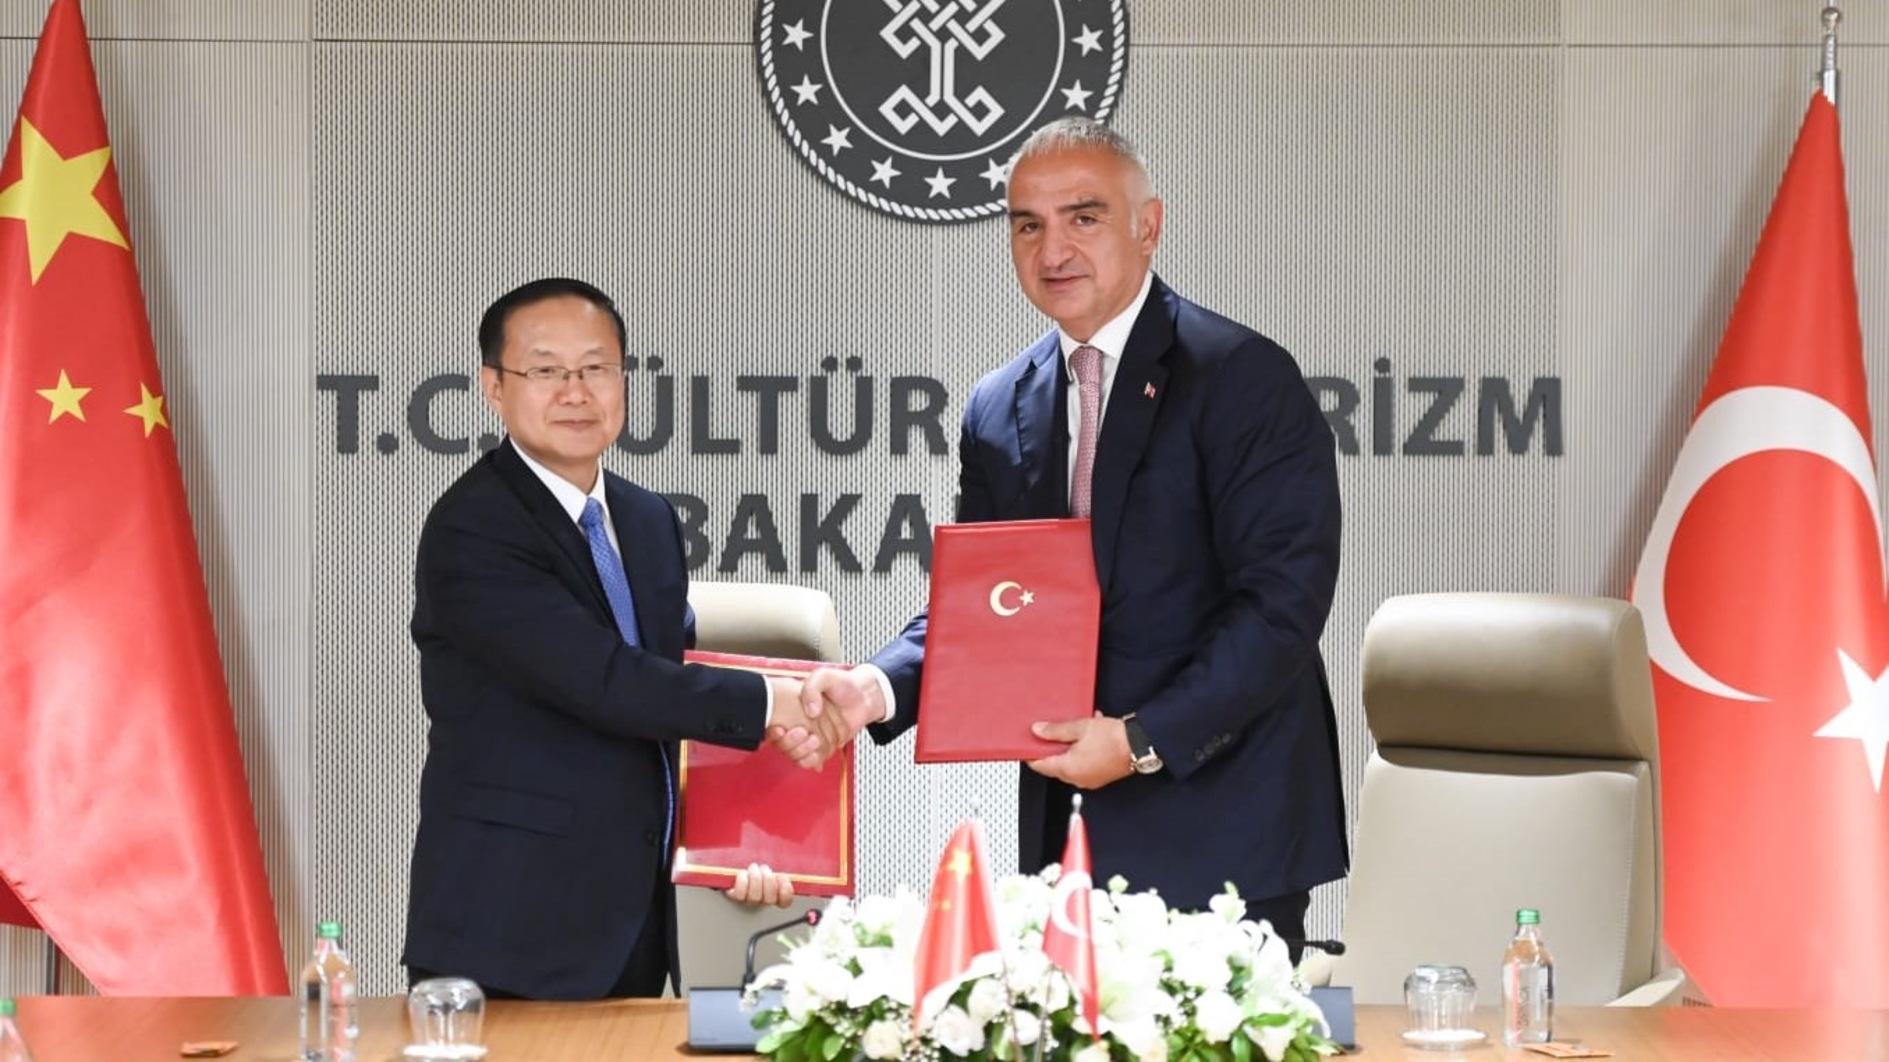 Türkiye en China ondertekenen overeenkomst over samenwerking op toerismegebied